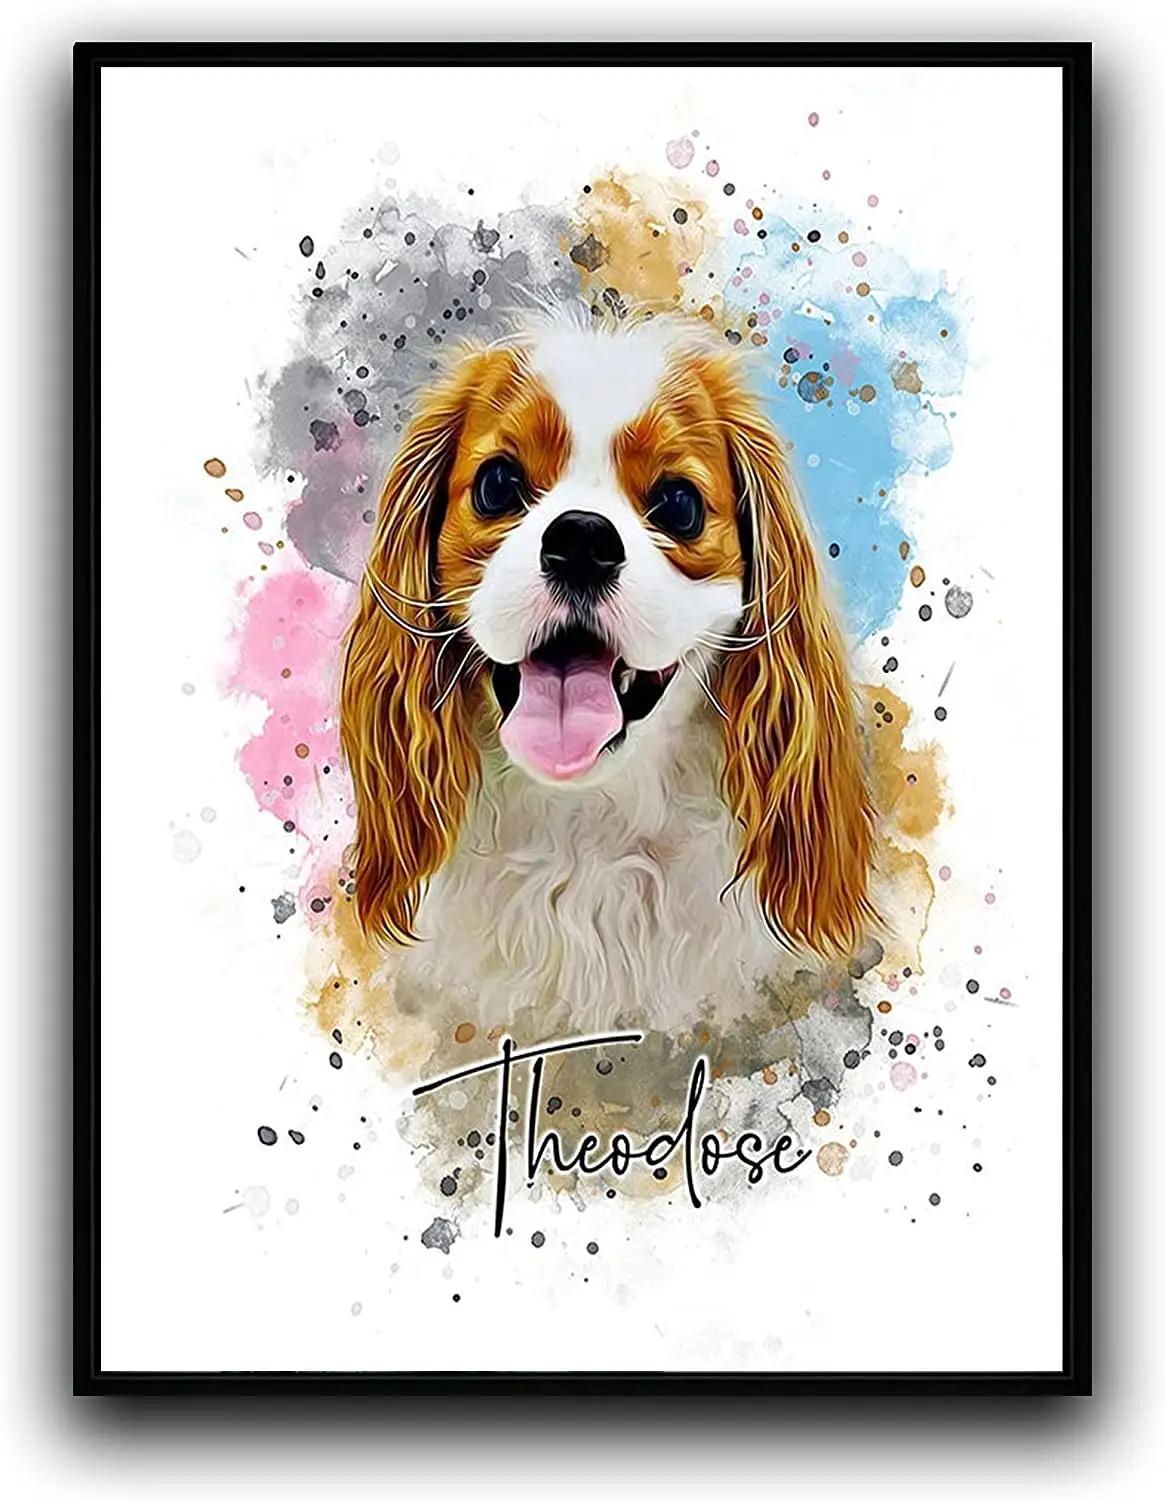 PG özel köpek/kedi portre suluboya resim çerçeveli tuval baskılar ile fotoğraf duvar sanatı ev dekorasyon için